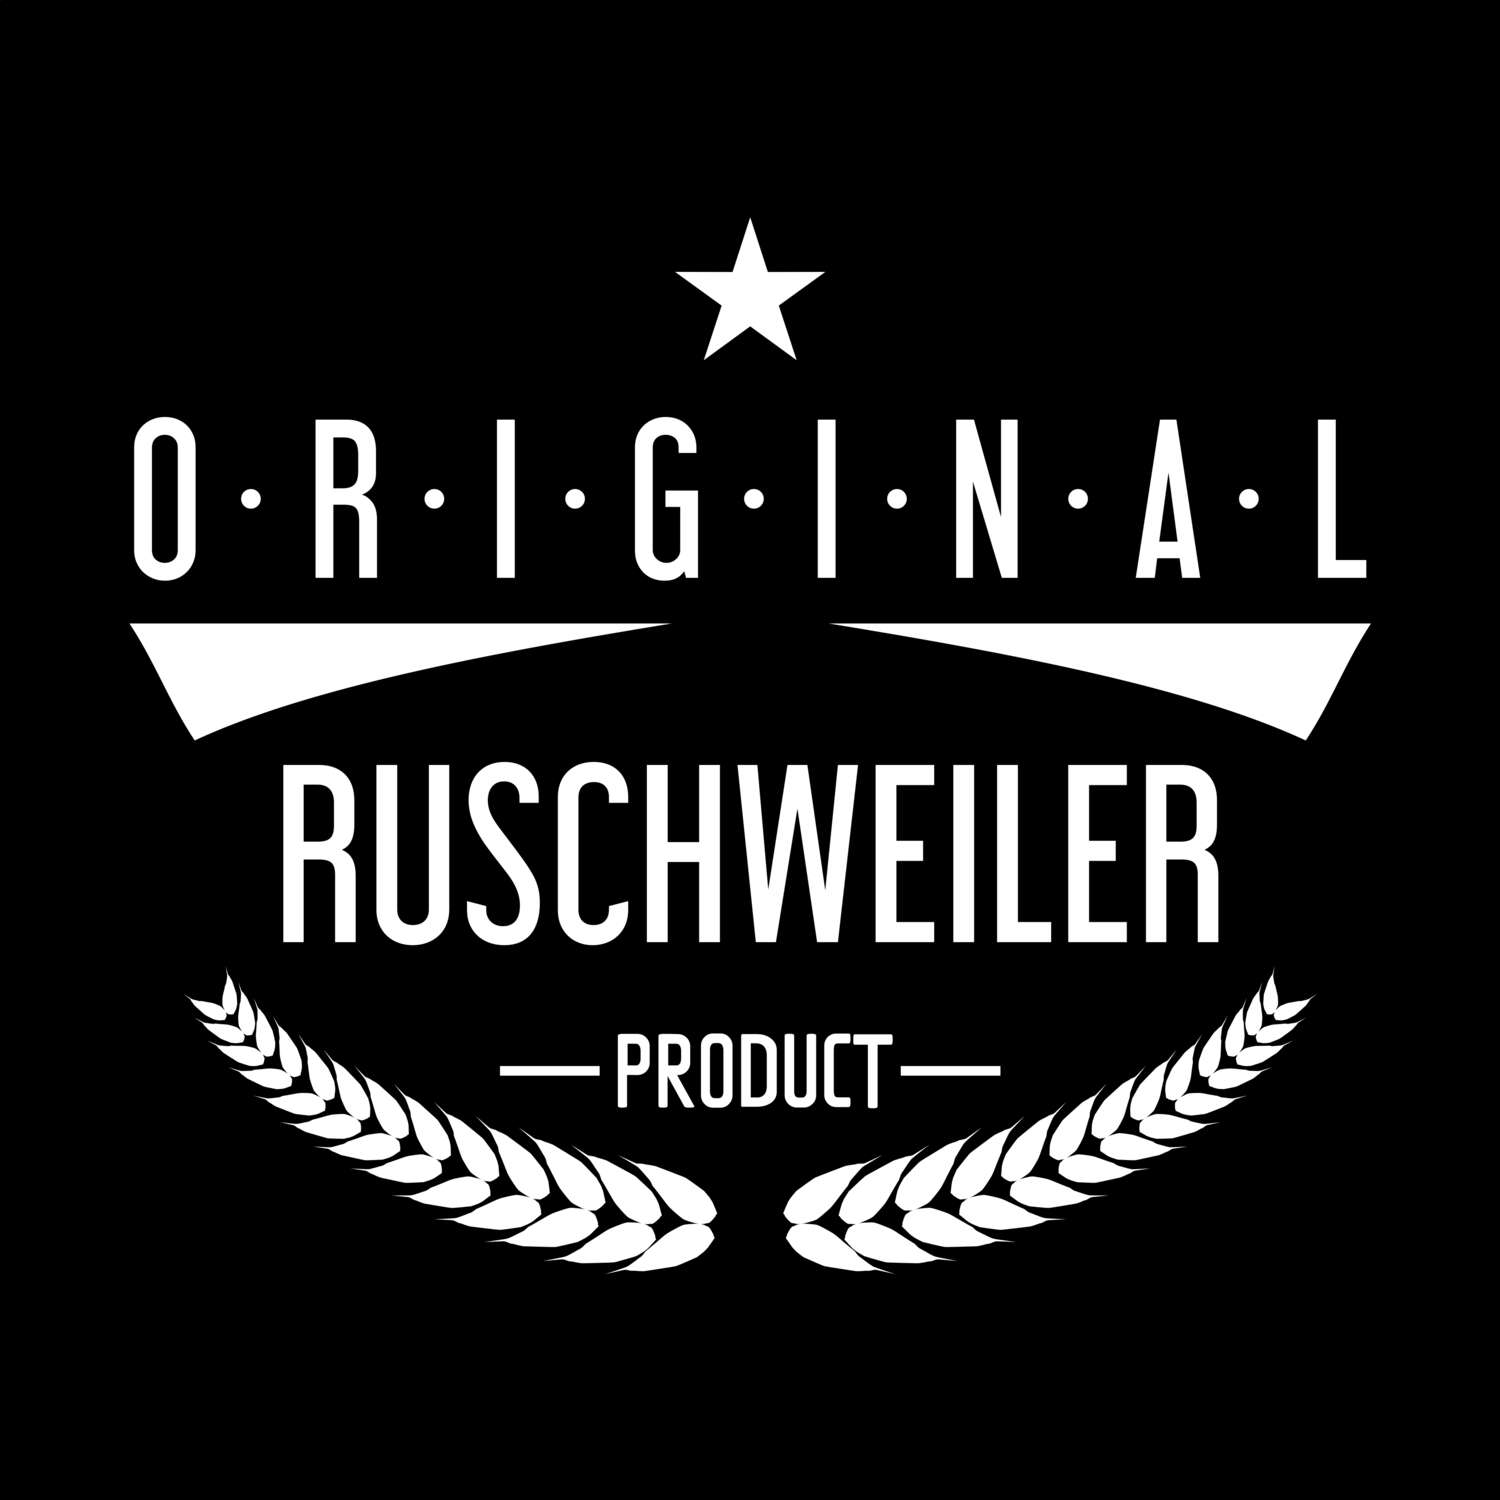 Ruschweiler T-Shirt »Original Product«